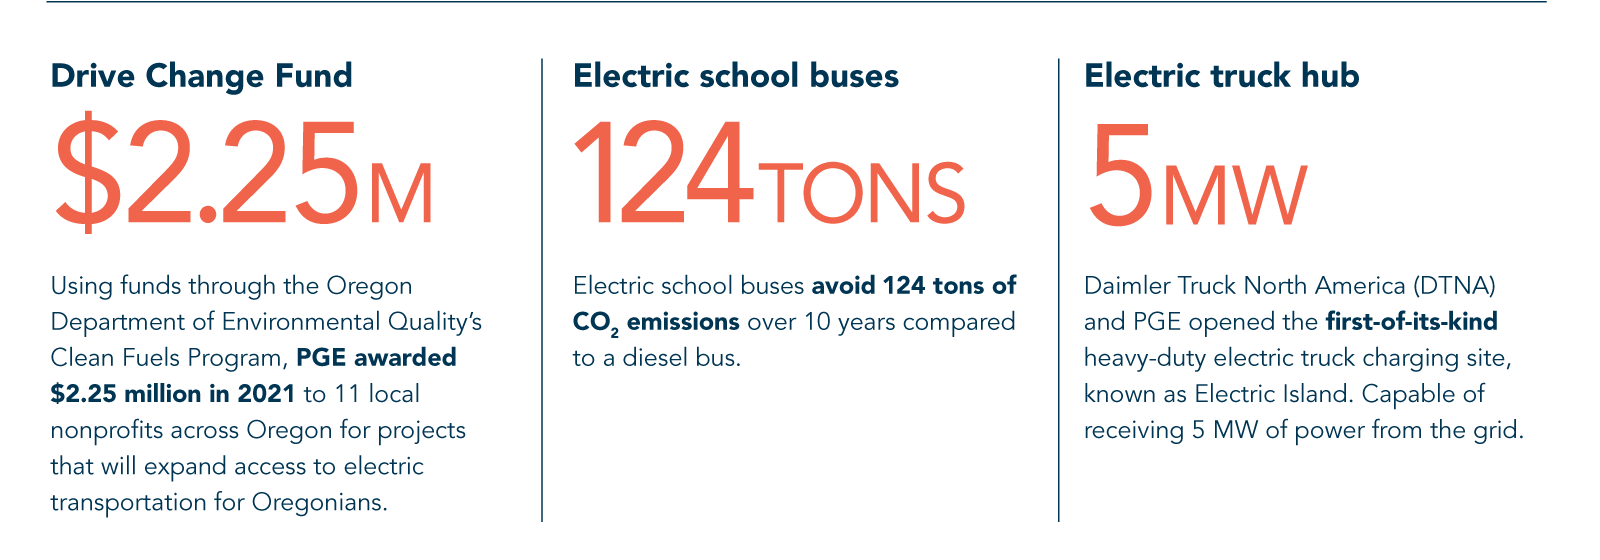 ESG Electric Bus Hub stats 